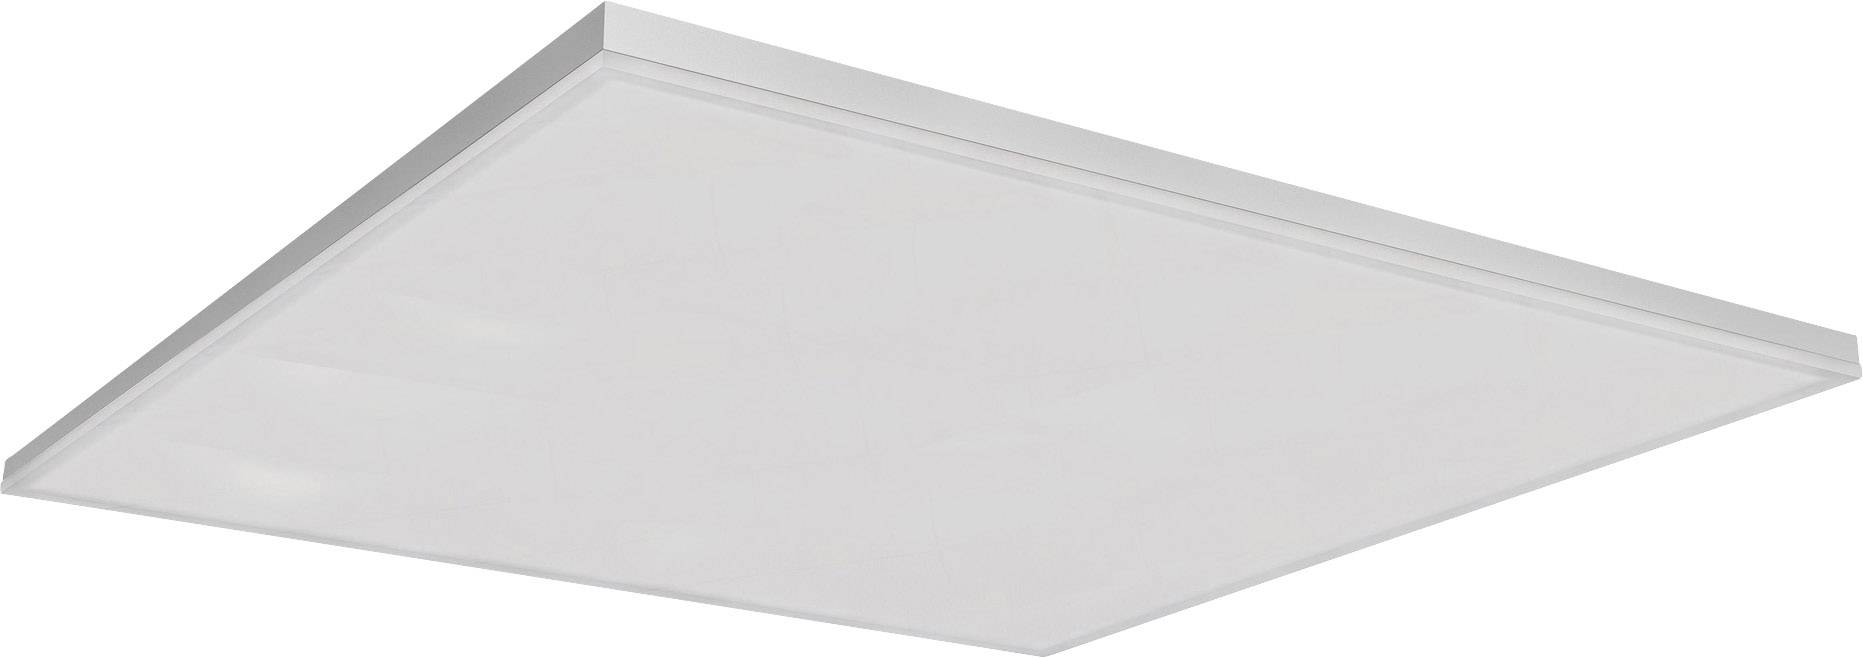 LEDVANCE SMART+ TUNABLE WHITE 600X600 4058075484436 LED-Deckenleuchte Weiß 40 W App steuerbar,